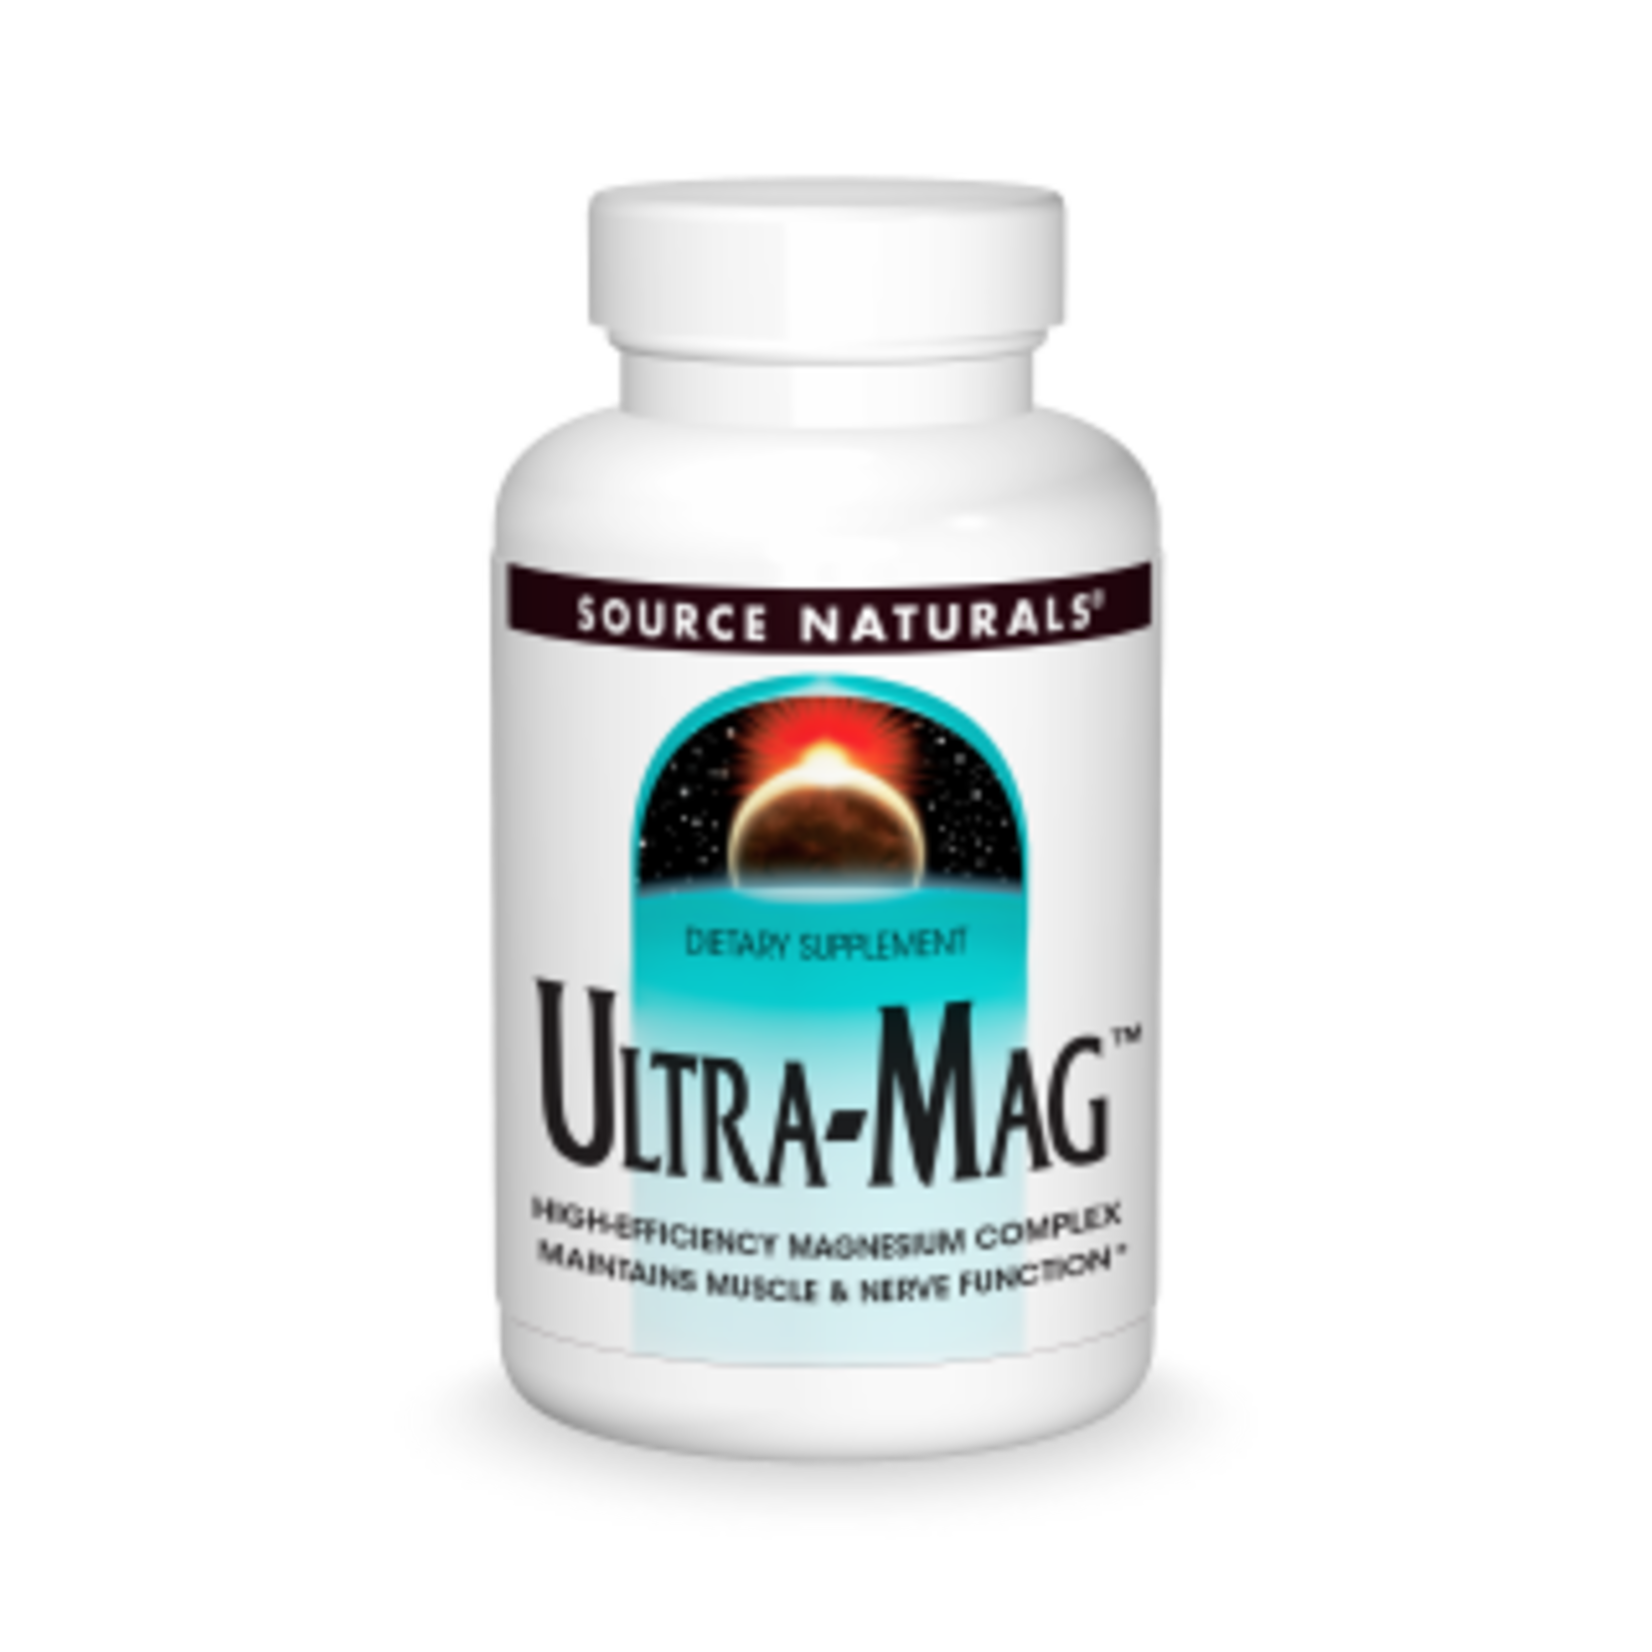 Source Naturals Source Naturals - Ultra-Mag - 60 Tablets